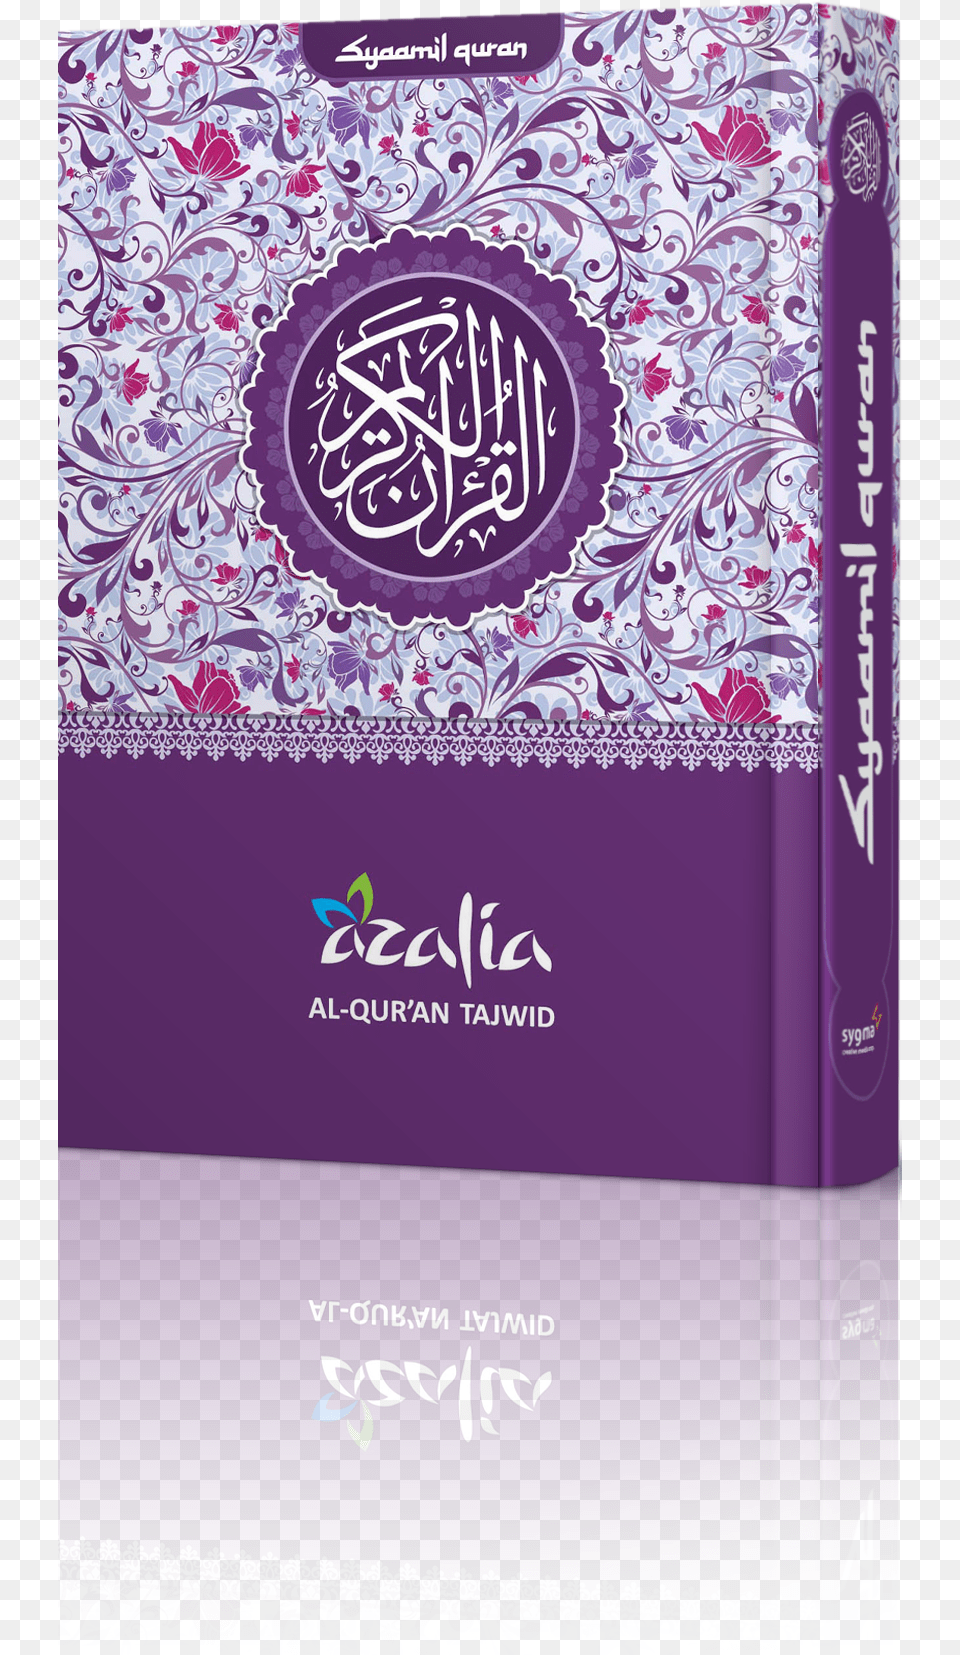 Alquran Rainbow Wanita Tajw Quran Purple, Book, Publication Free Transparent Png